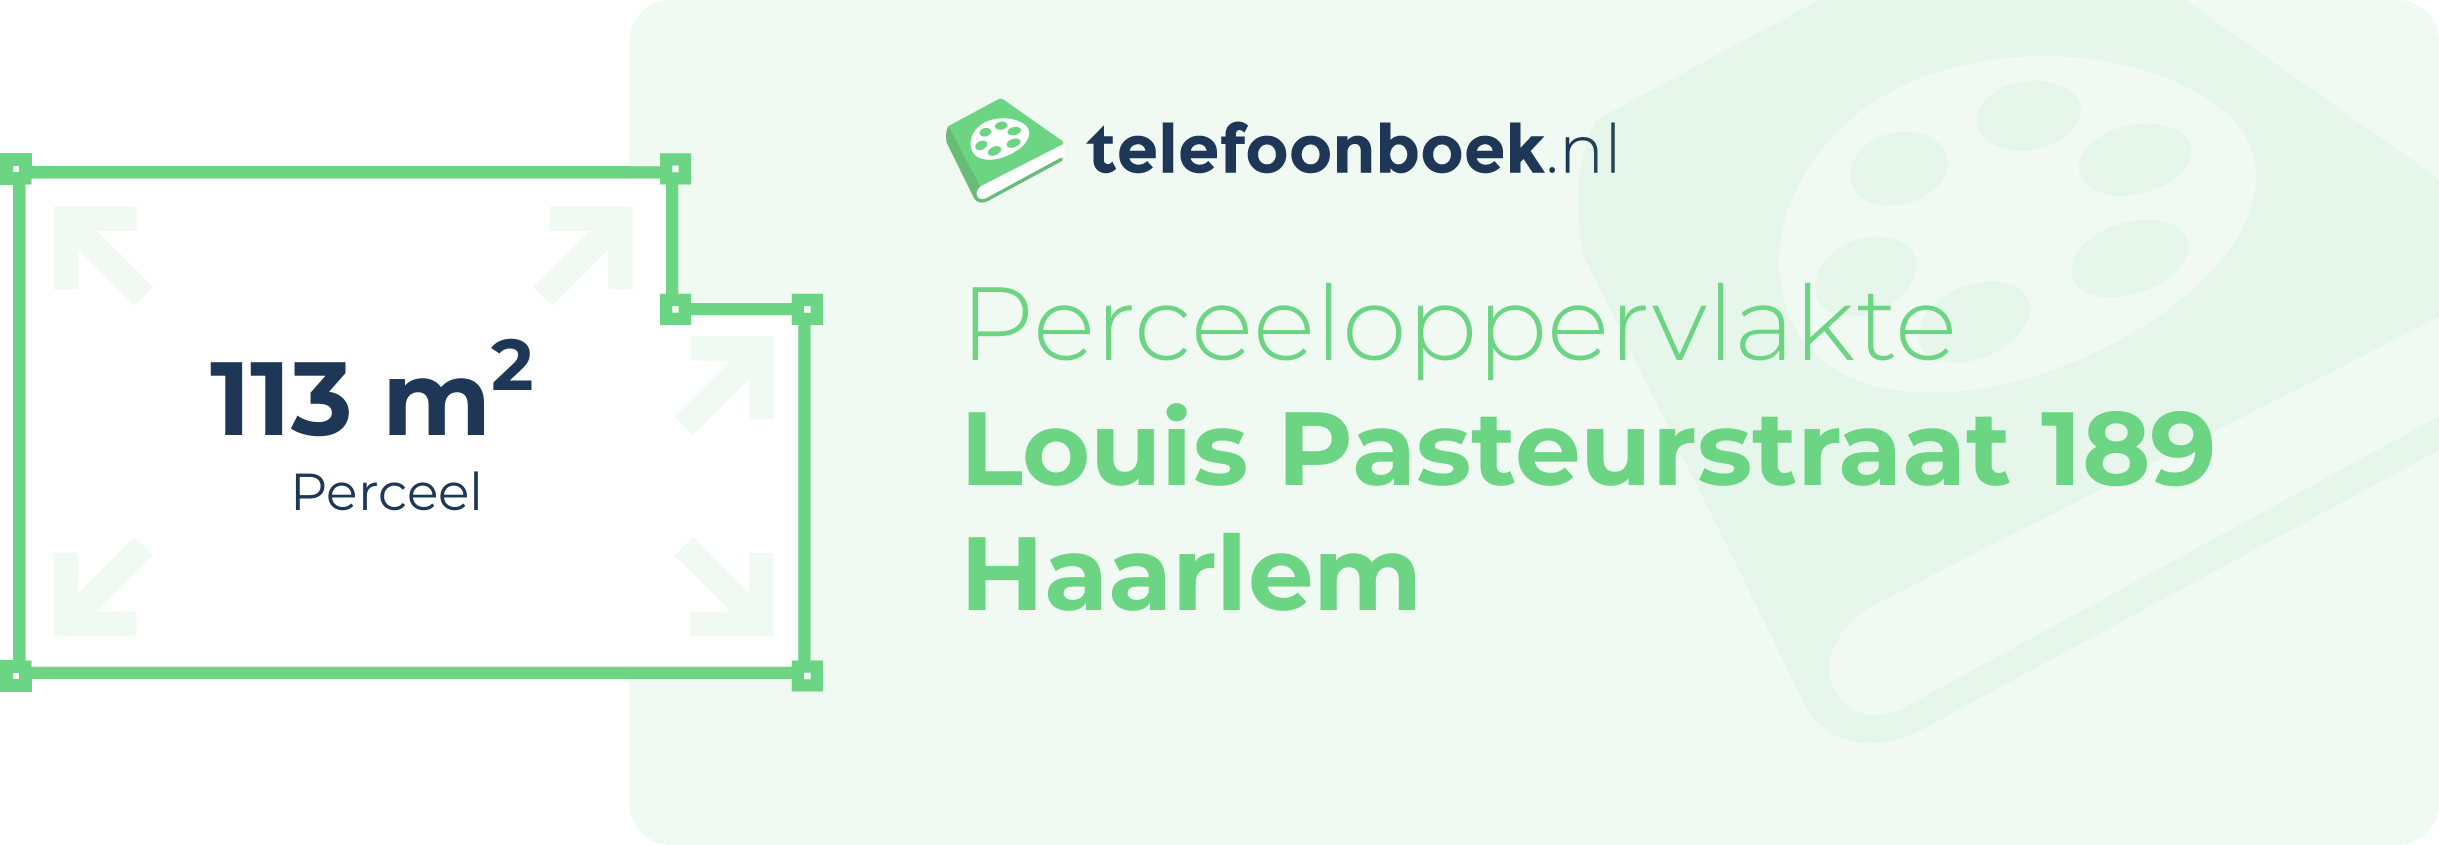 Perceeloppervlakte Louis Pasteurstraat 189 Haarlem